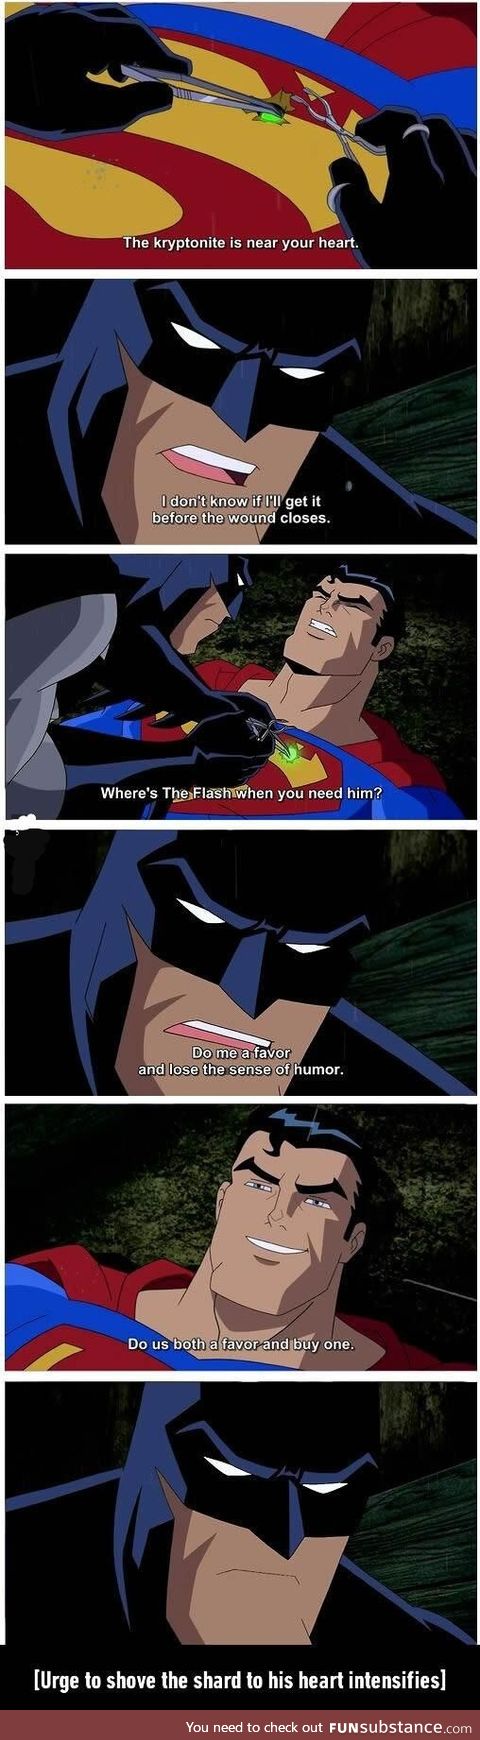 Batman vs Superman (urge to shove kryptonite through his heart intensifies)